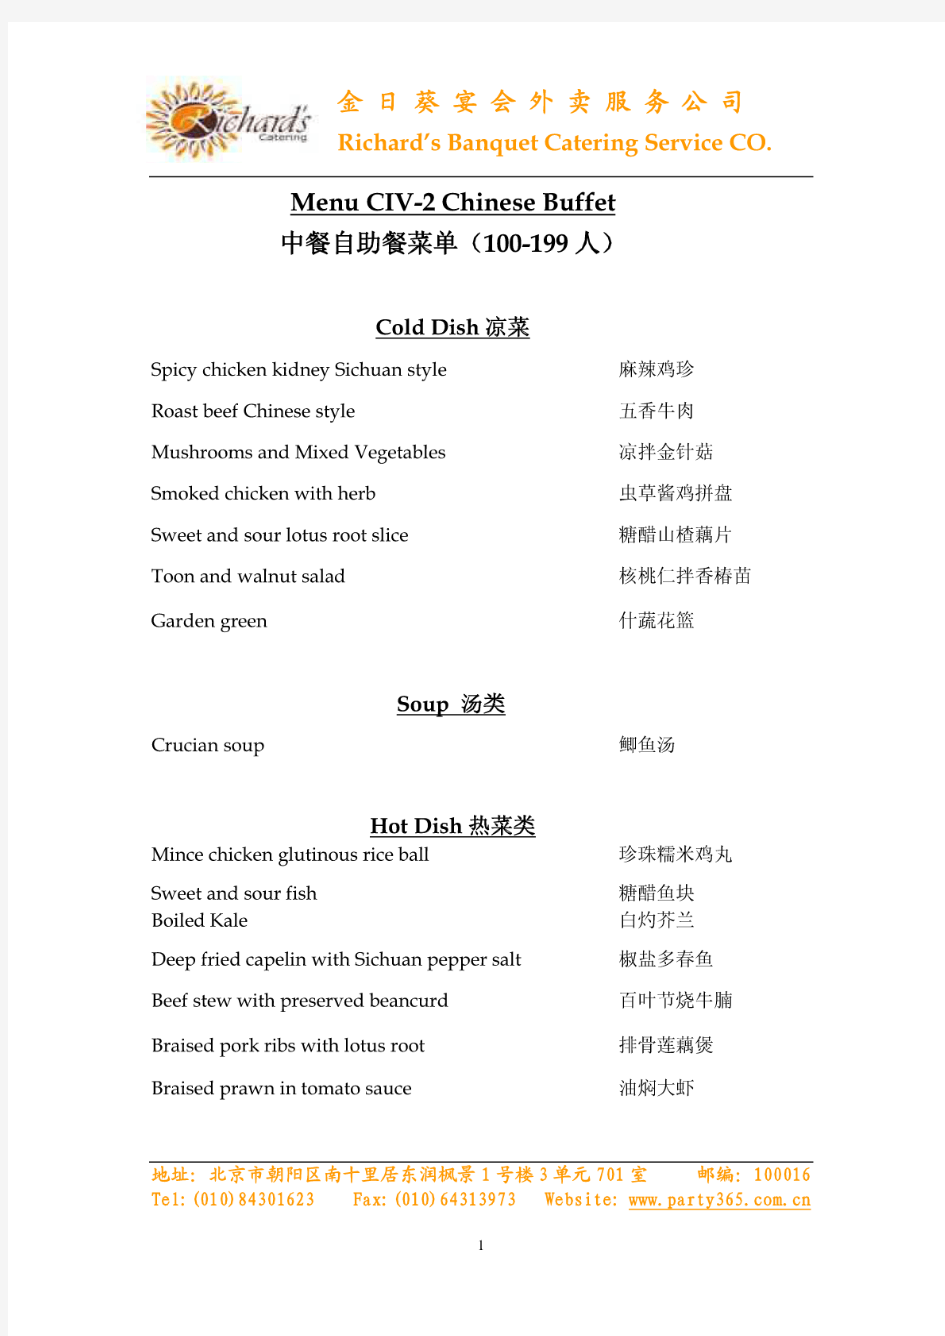 中餐自助餐菜单(100-199人)